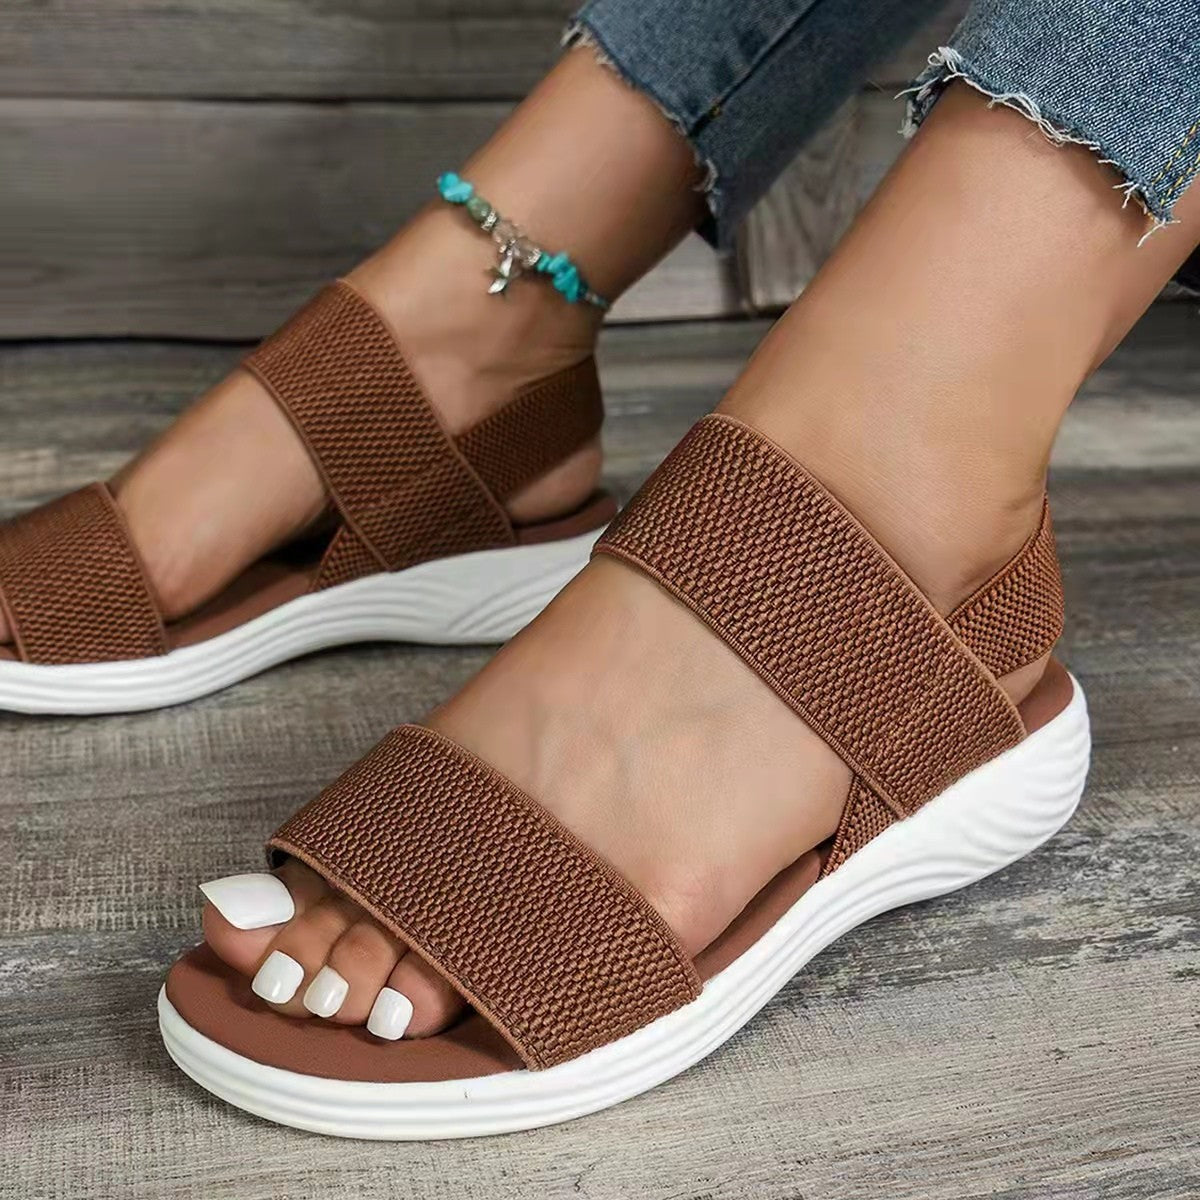 Double-strap Sandals Women Platform Beach Shoes